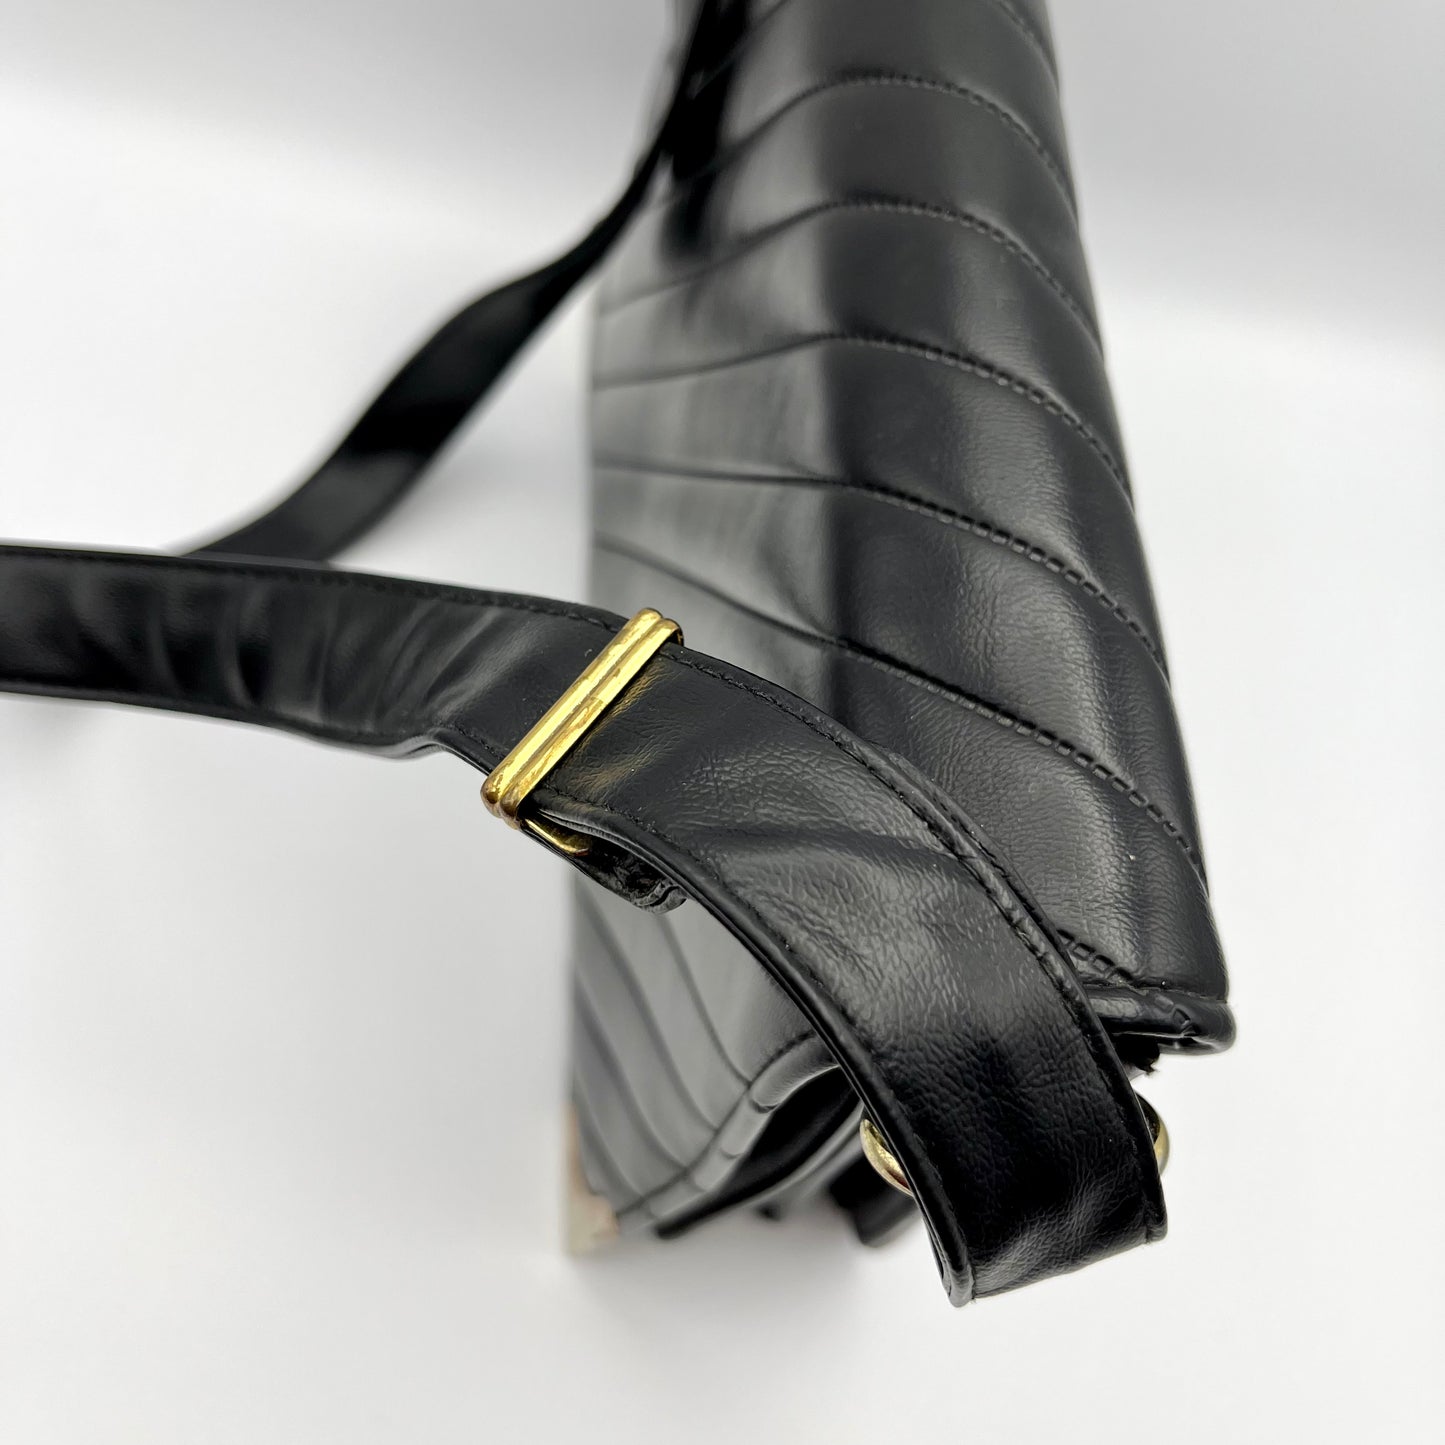 1960s Black Shoulder Bag With Adjustable Strap